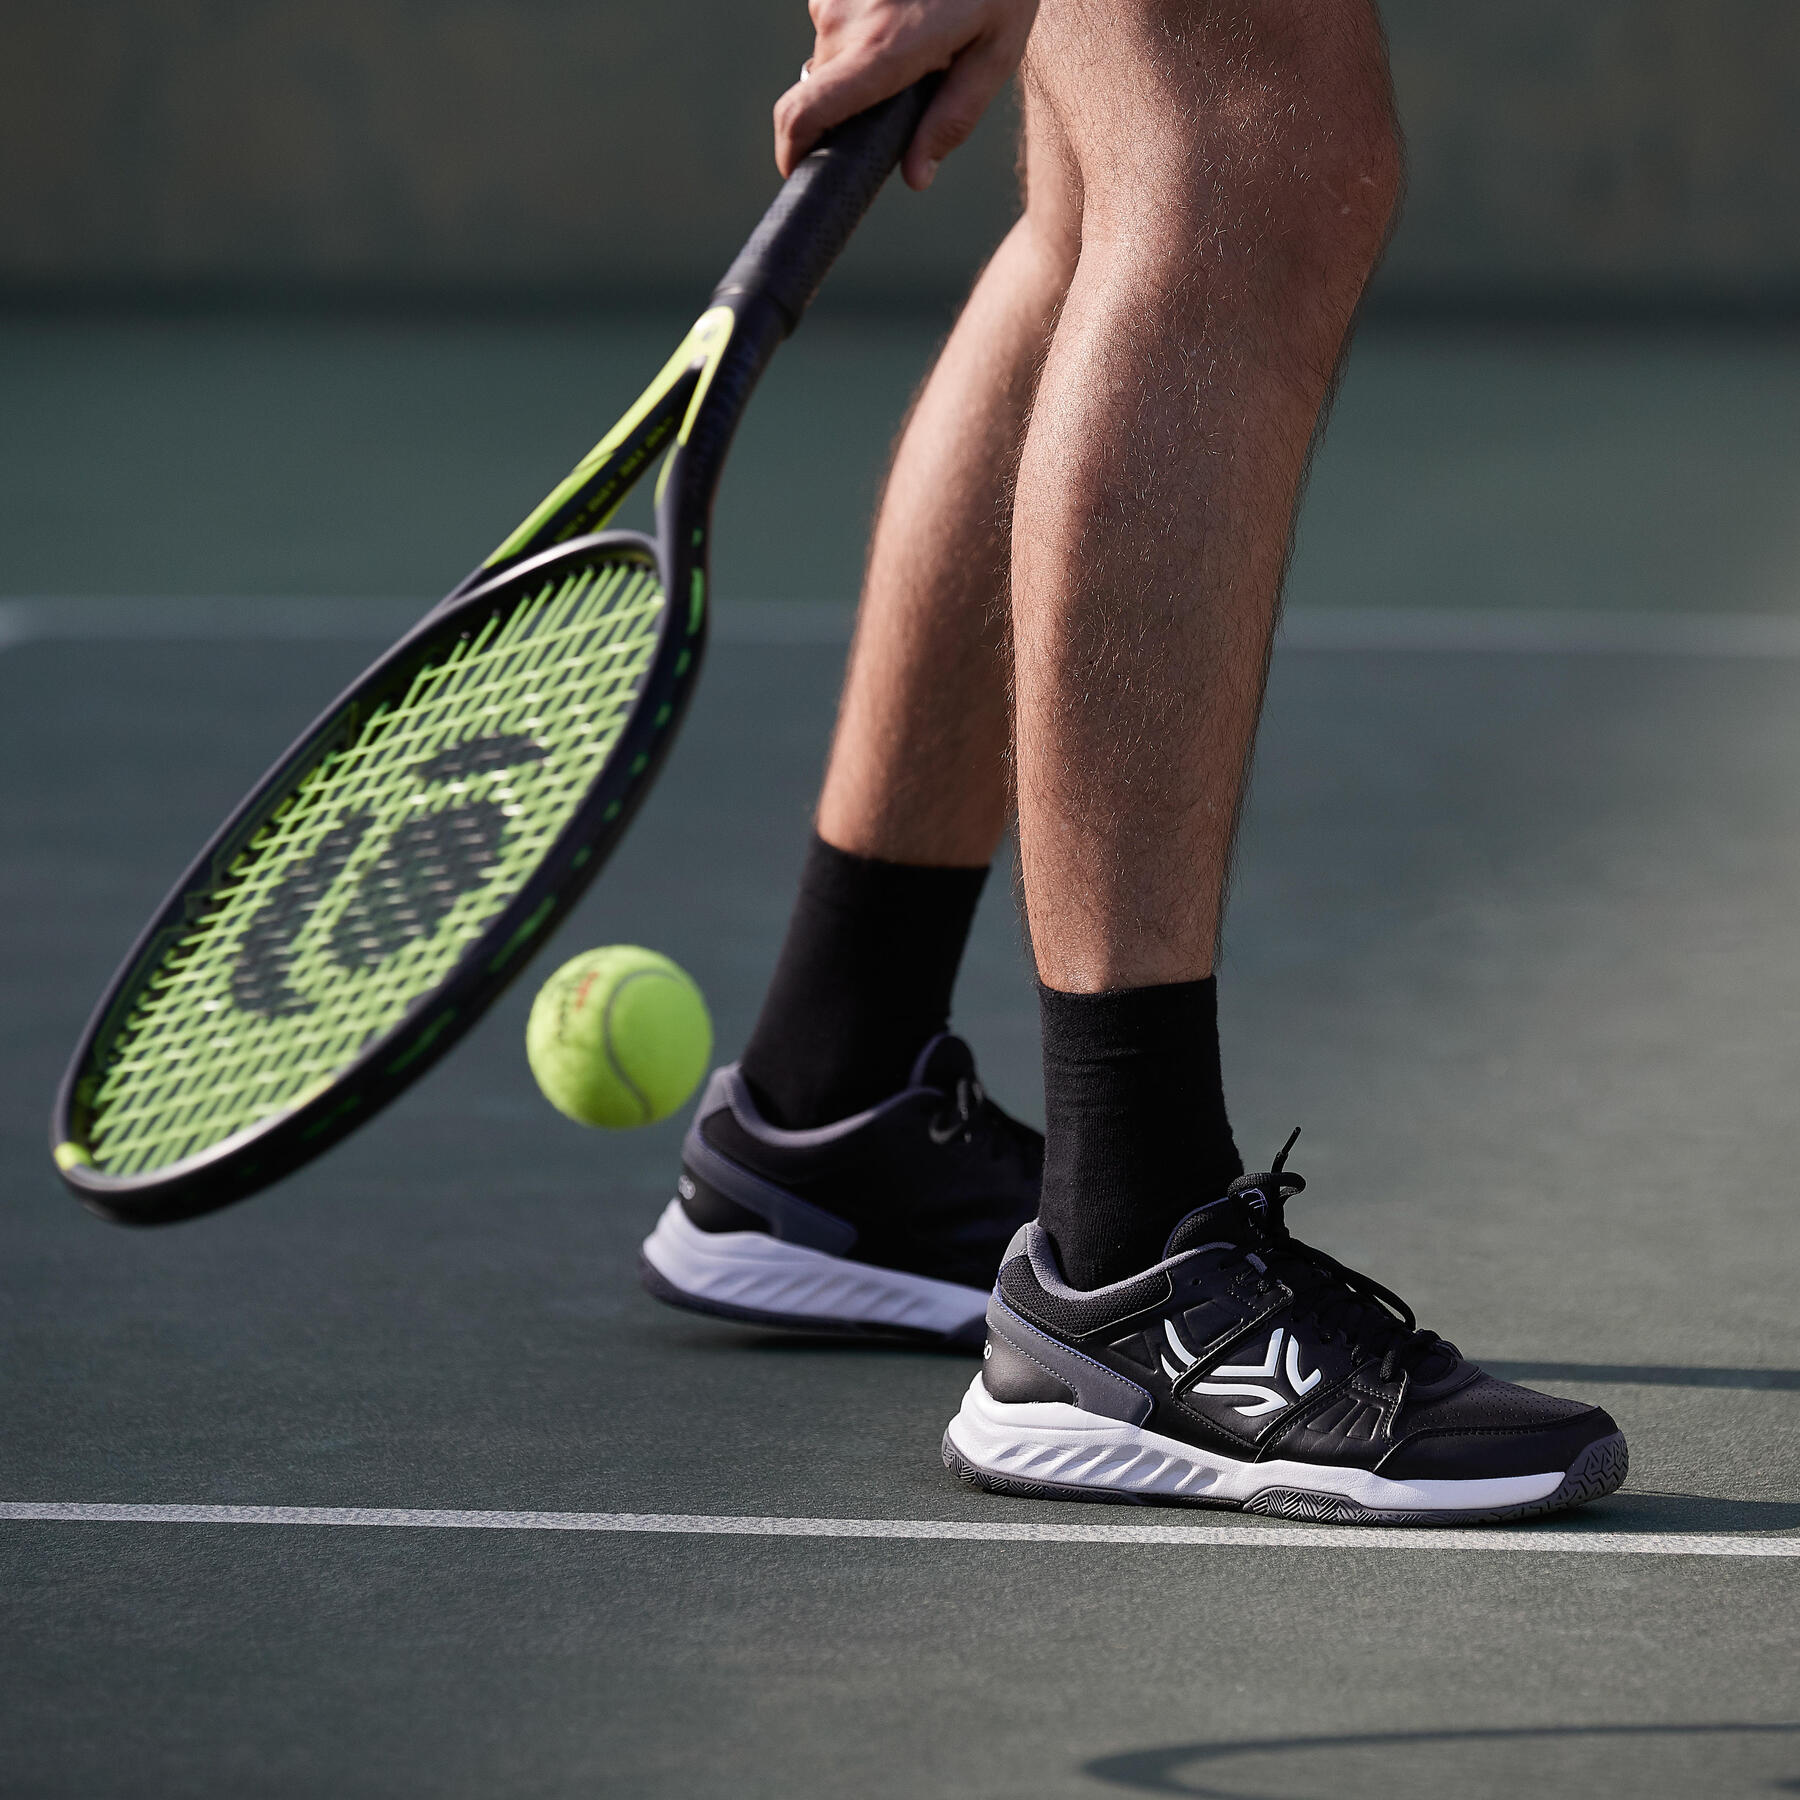 Hoe onderhoud je je tennisracket?